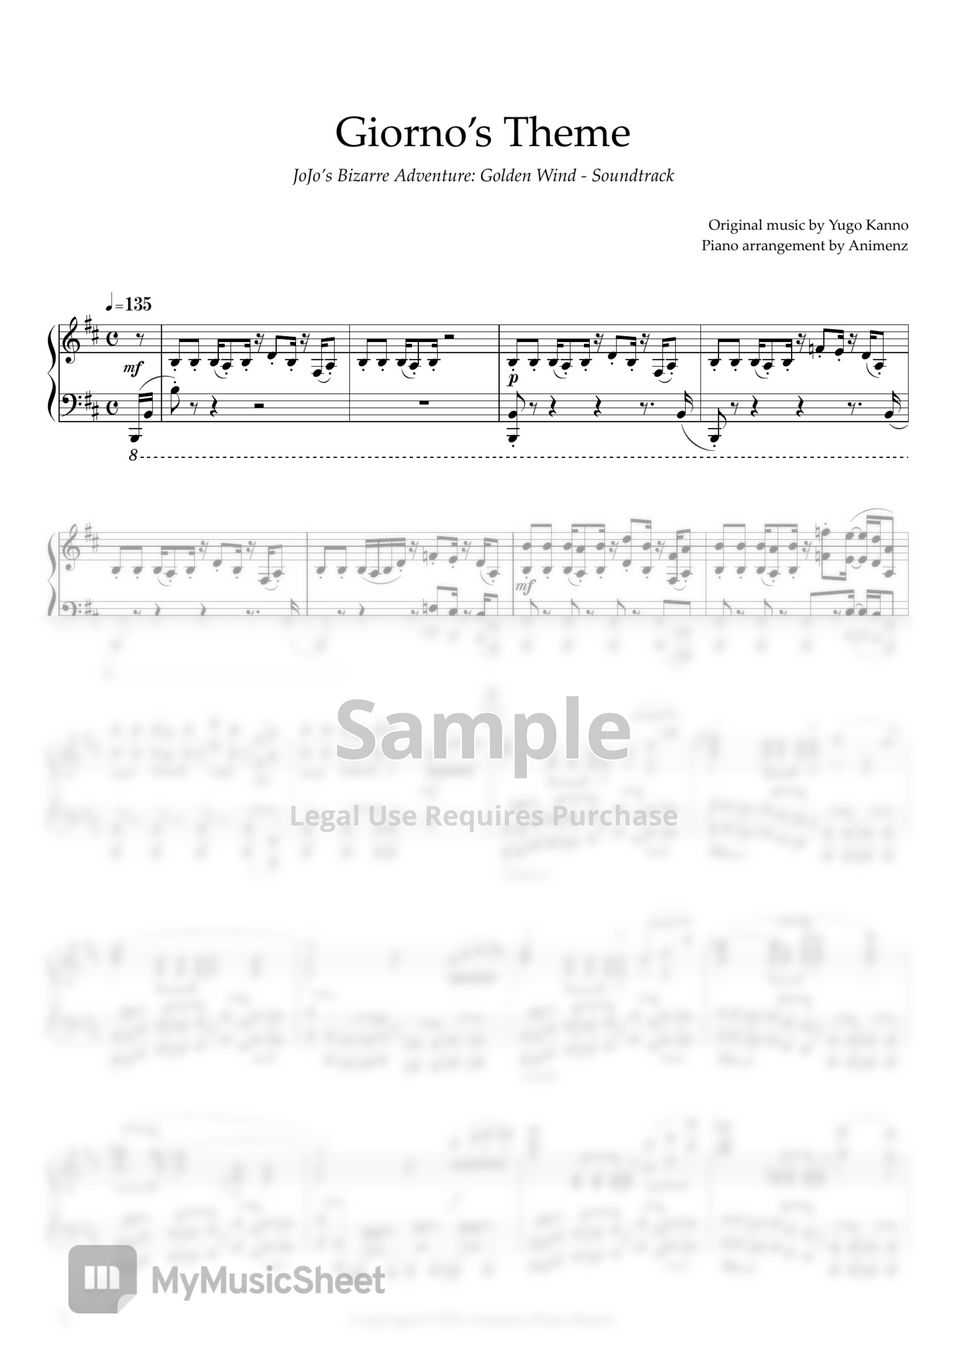 JoJo's Bizarre Adventure Golden Wind OST:Giorno's theme Sheet music for  Piano (Solo)